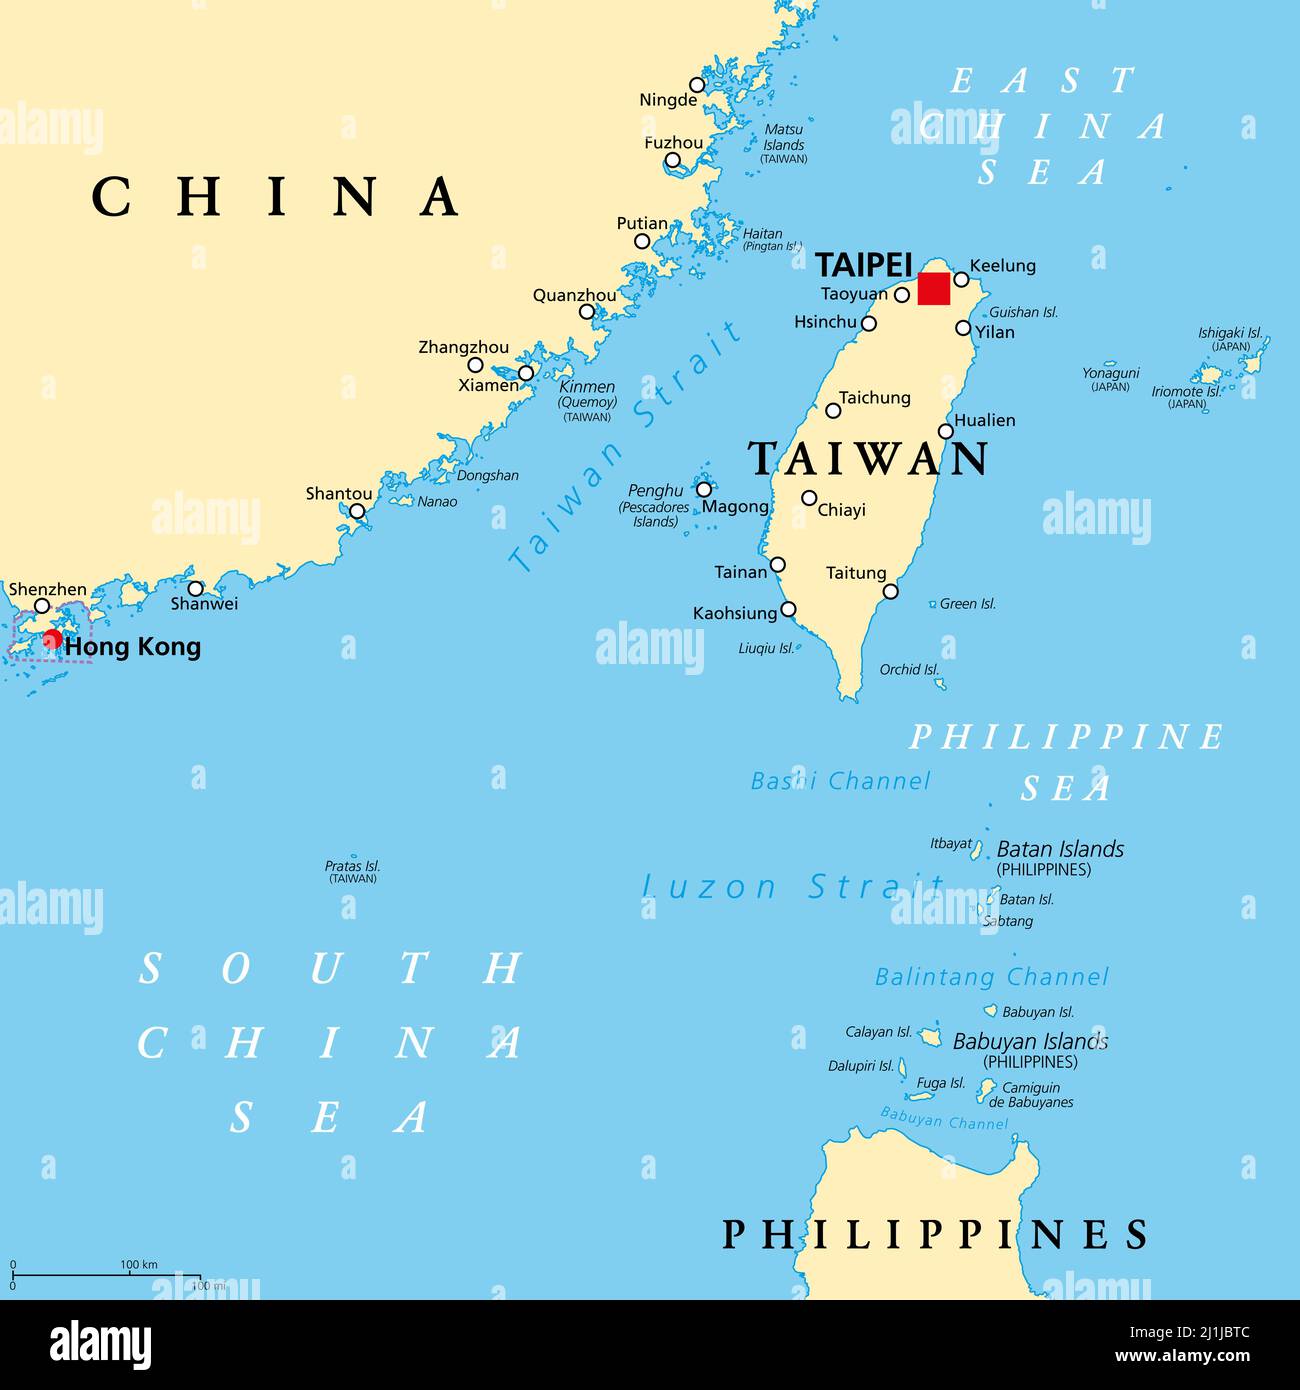 Area di Taiwan, mappa politica con la capitale Taipei. Zona libera della Repubblica di Cina (ROC). Province e gruppi insulari di Taiwan. Foto Stock